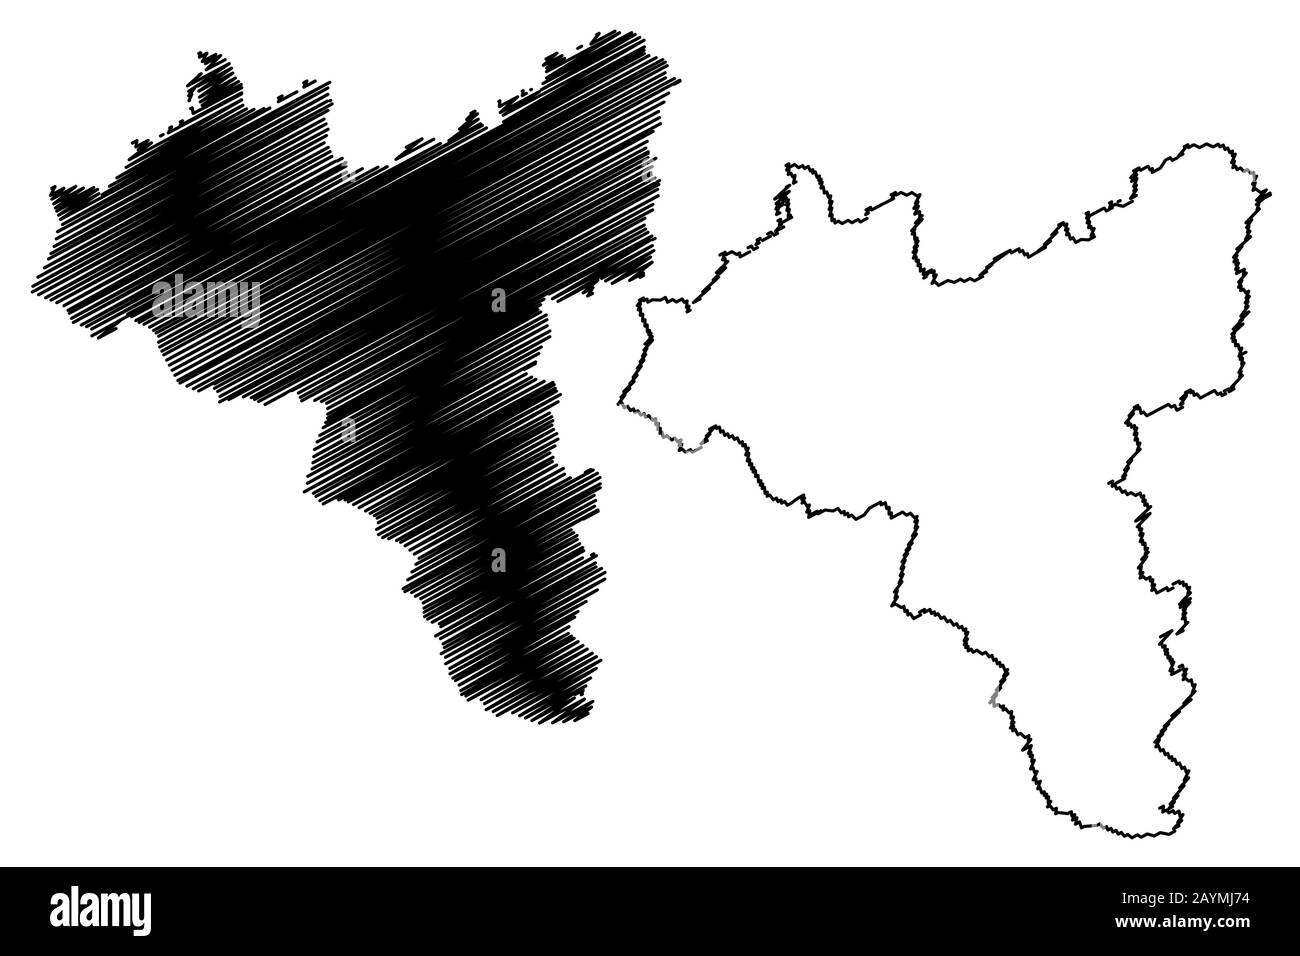 Valga County (Republic of Estonia, Counties of Estonia) map vector illustration, scribble sketch Valgamaa map Stock Vector